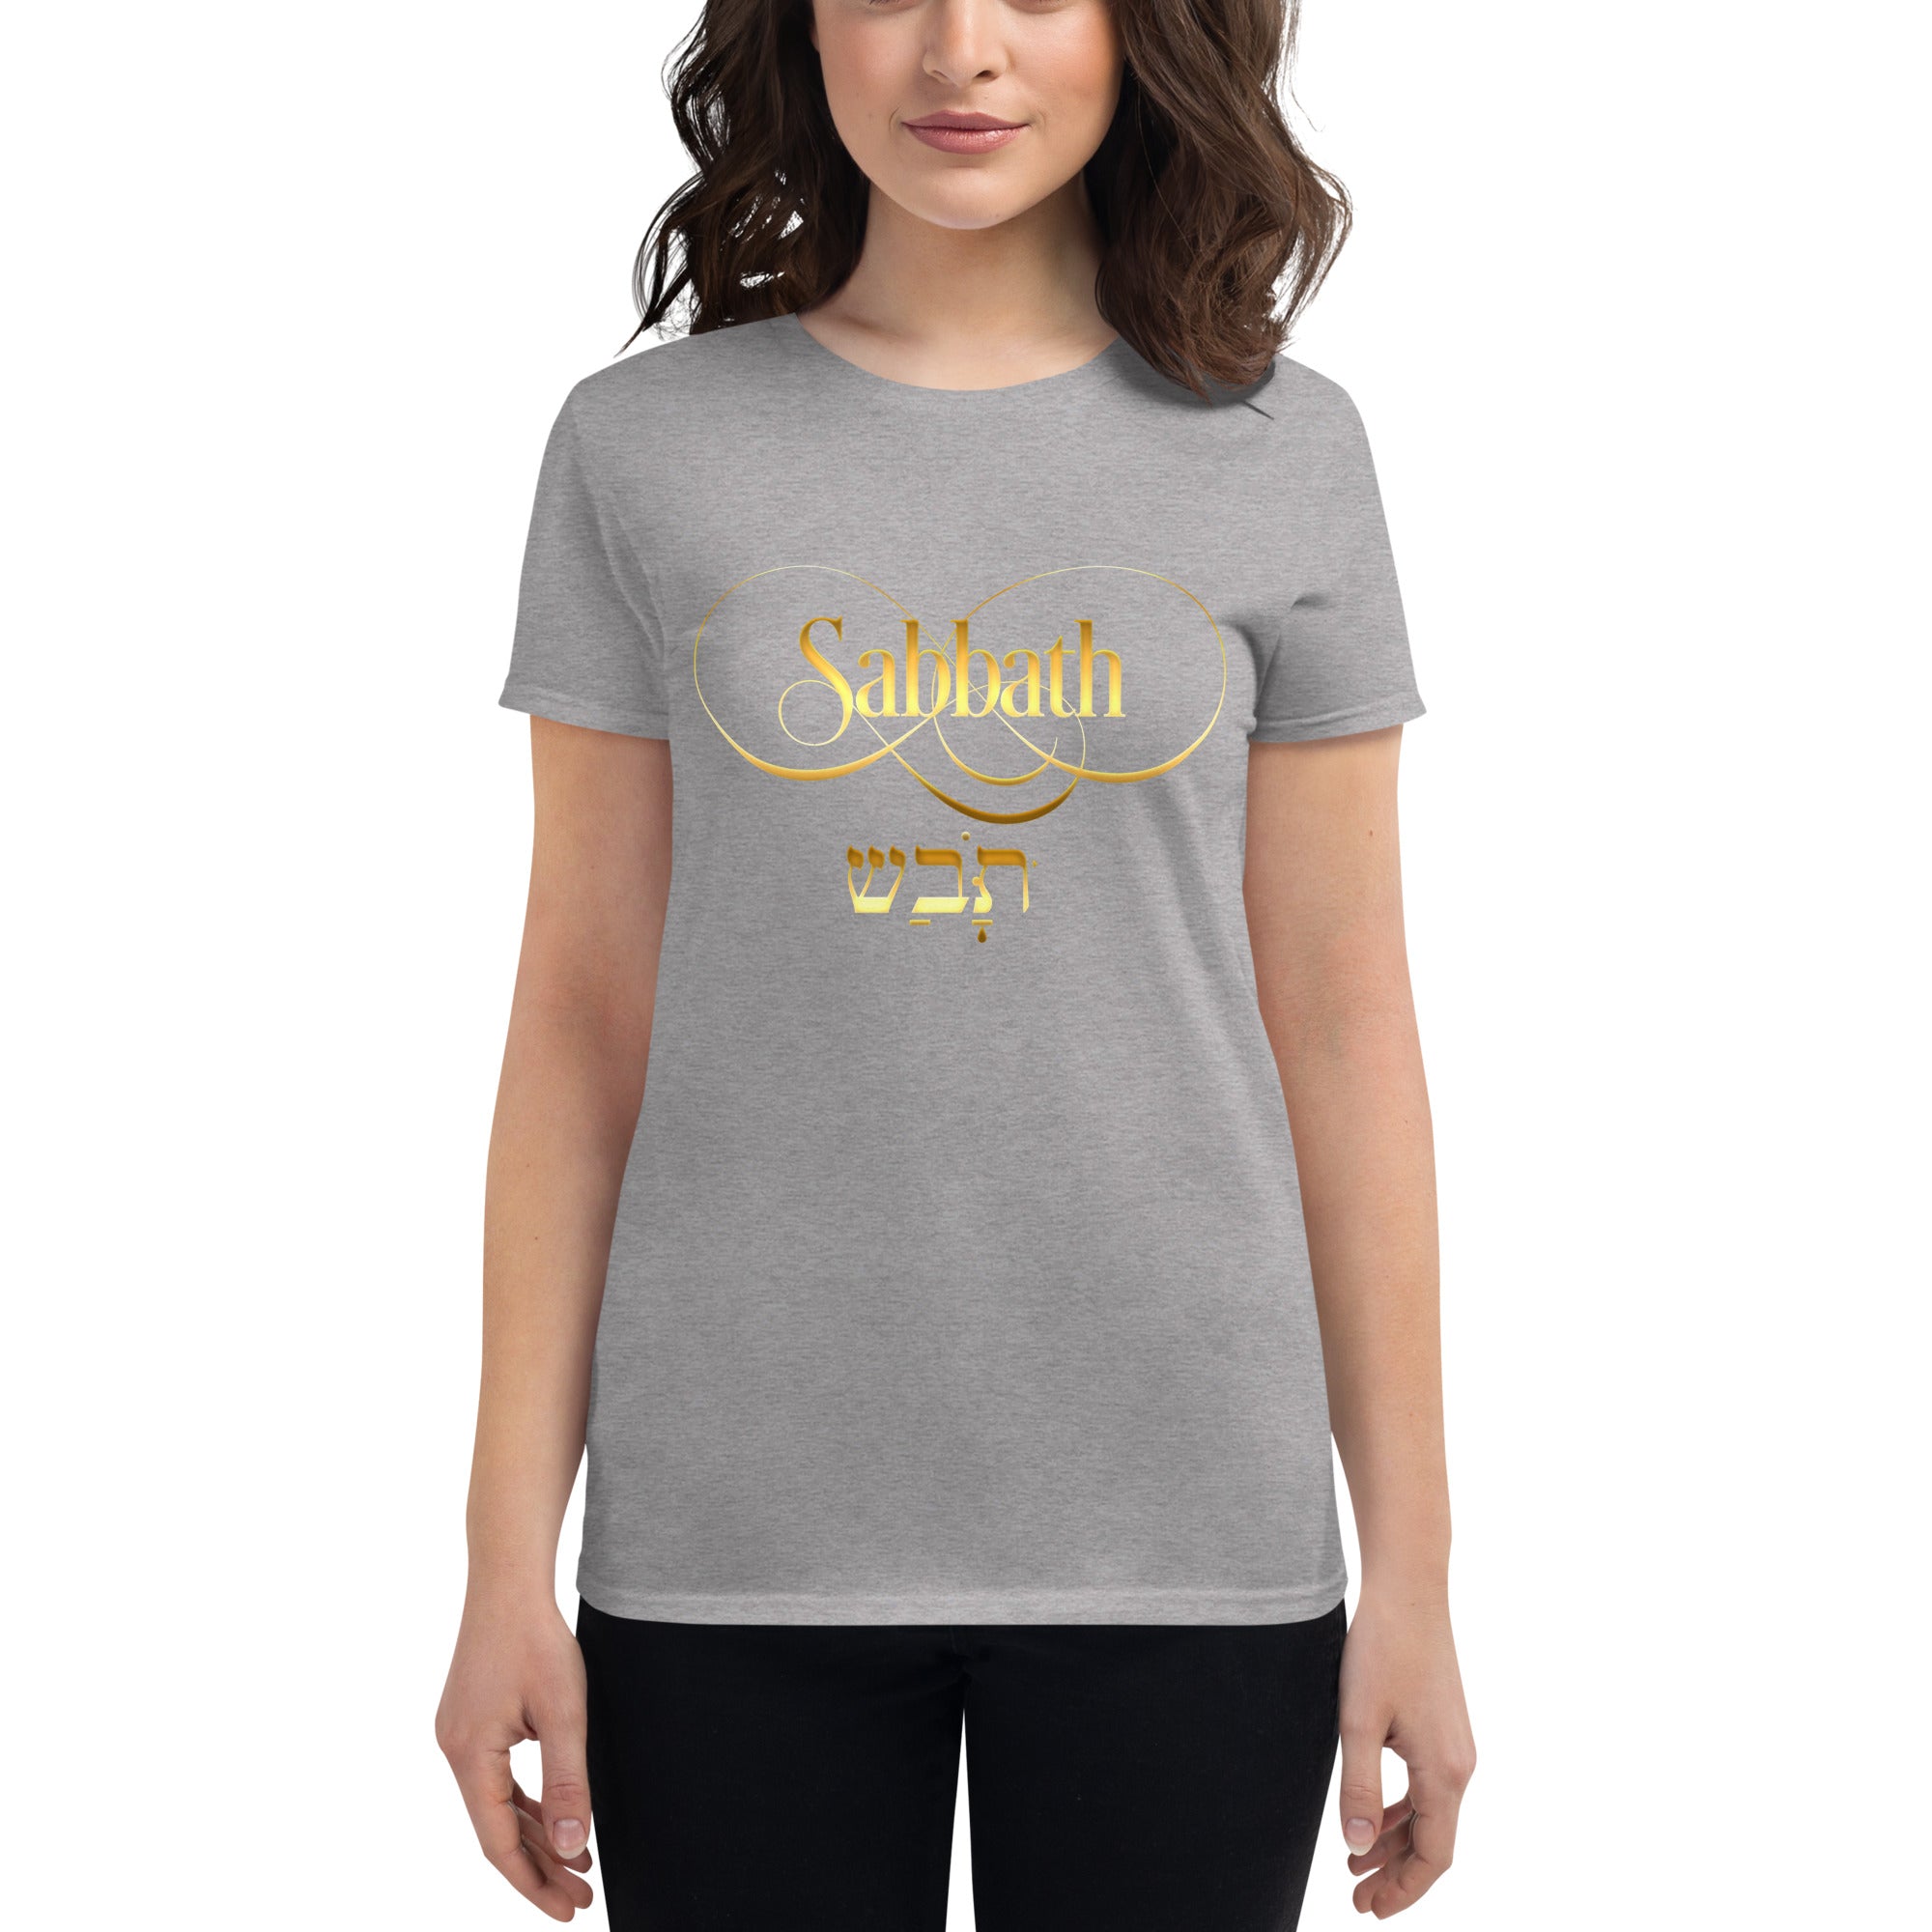 Sabbath Women's short sleeve t-shirt